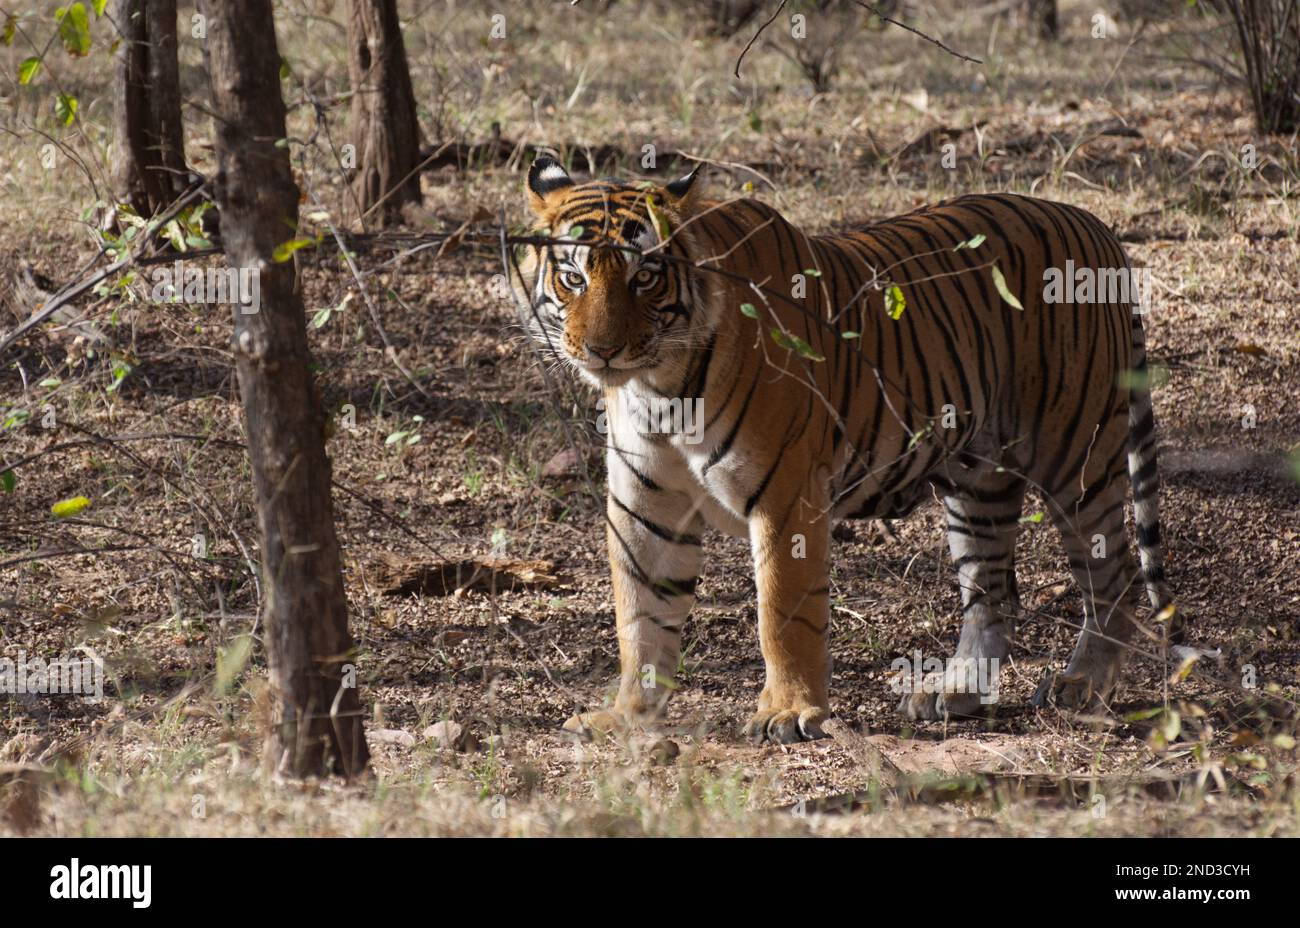 Un tigre du Bengale royal sauvage mâle debout parmi les arbres de la forêt en regardant la caméra. L'animal complet est illustré Banque D'Images